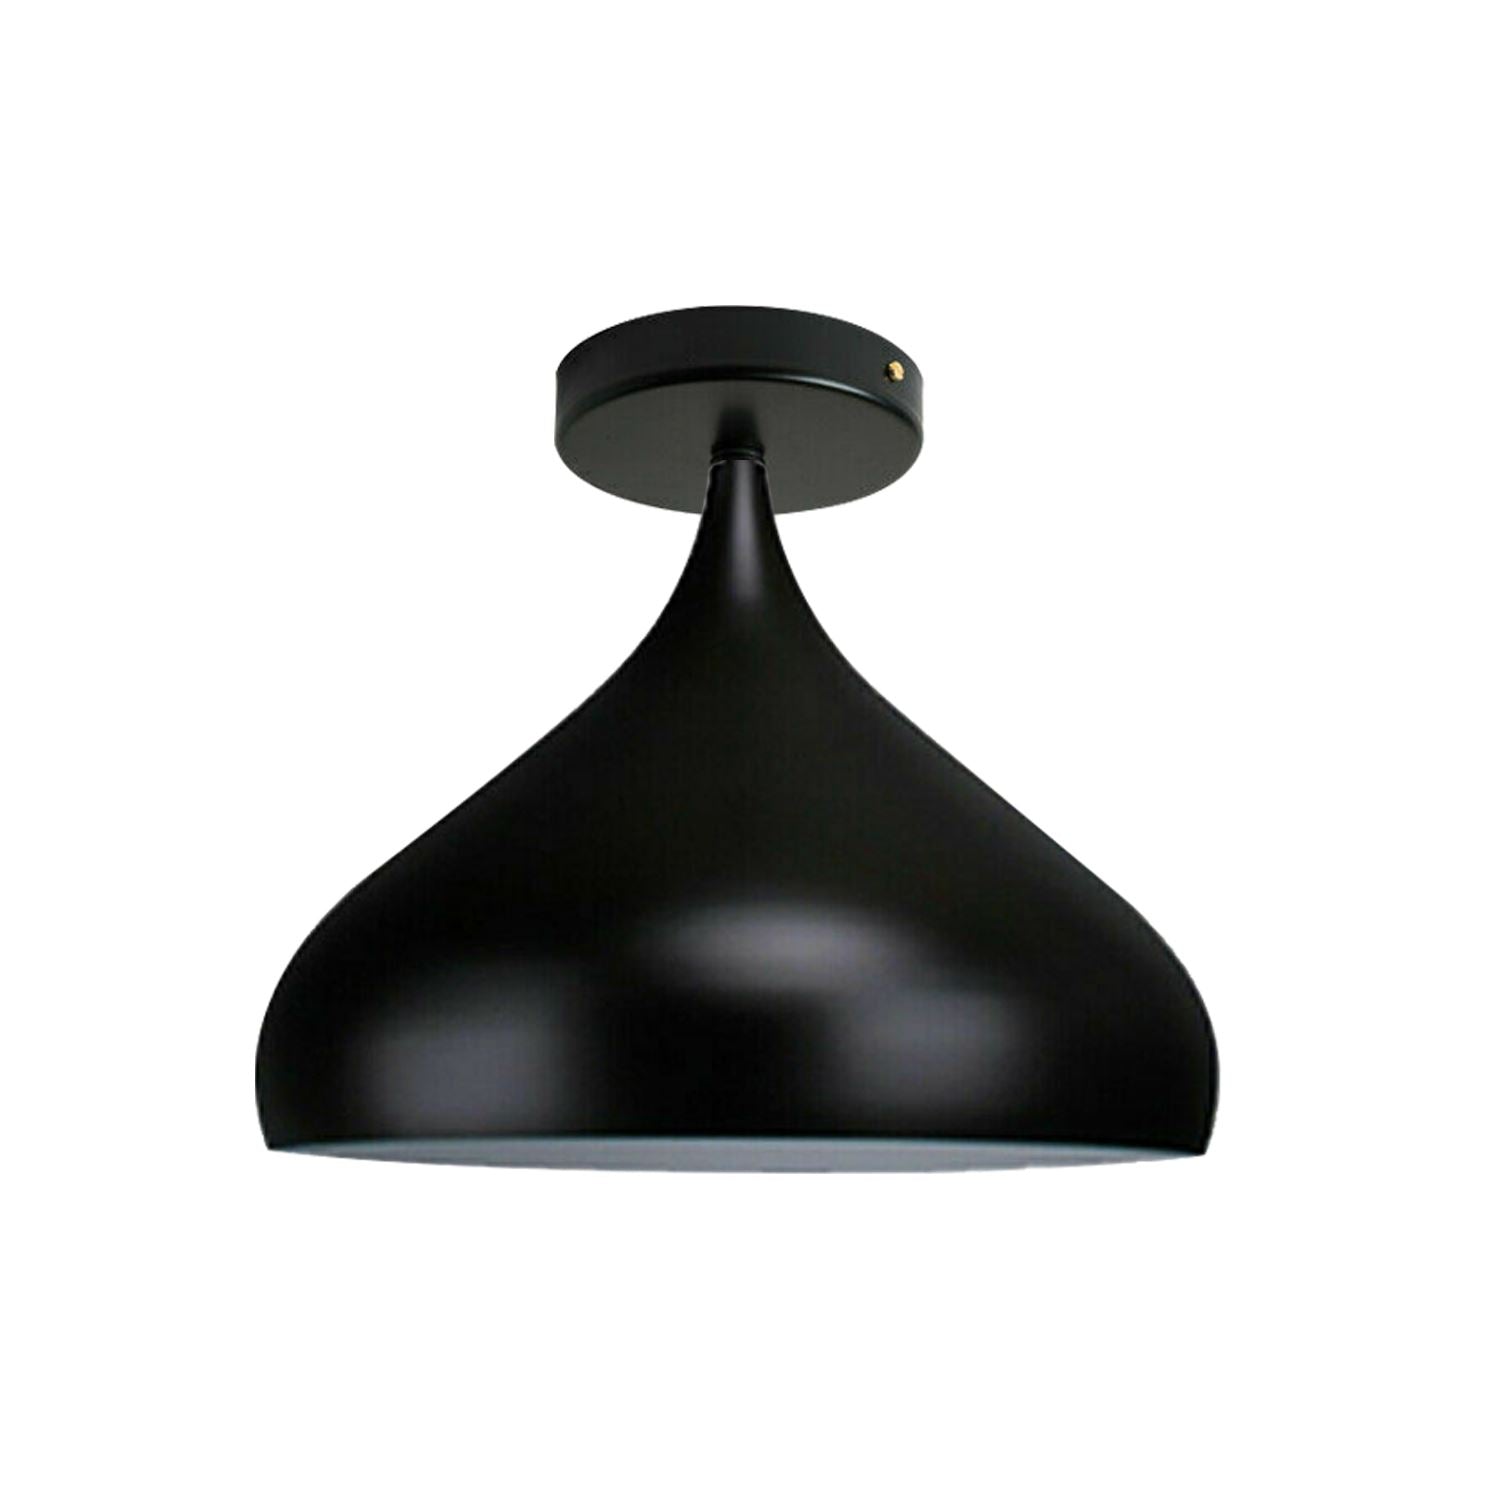 Chandelier Style Modern Ceiling Flush Mound Pendant Lamp UK~1298 - LEDSone UK Ltd